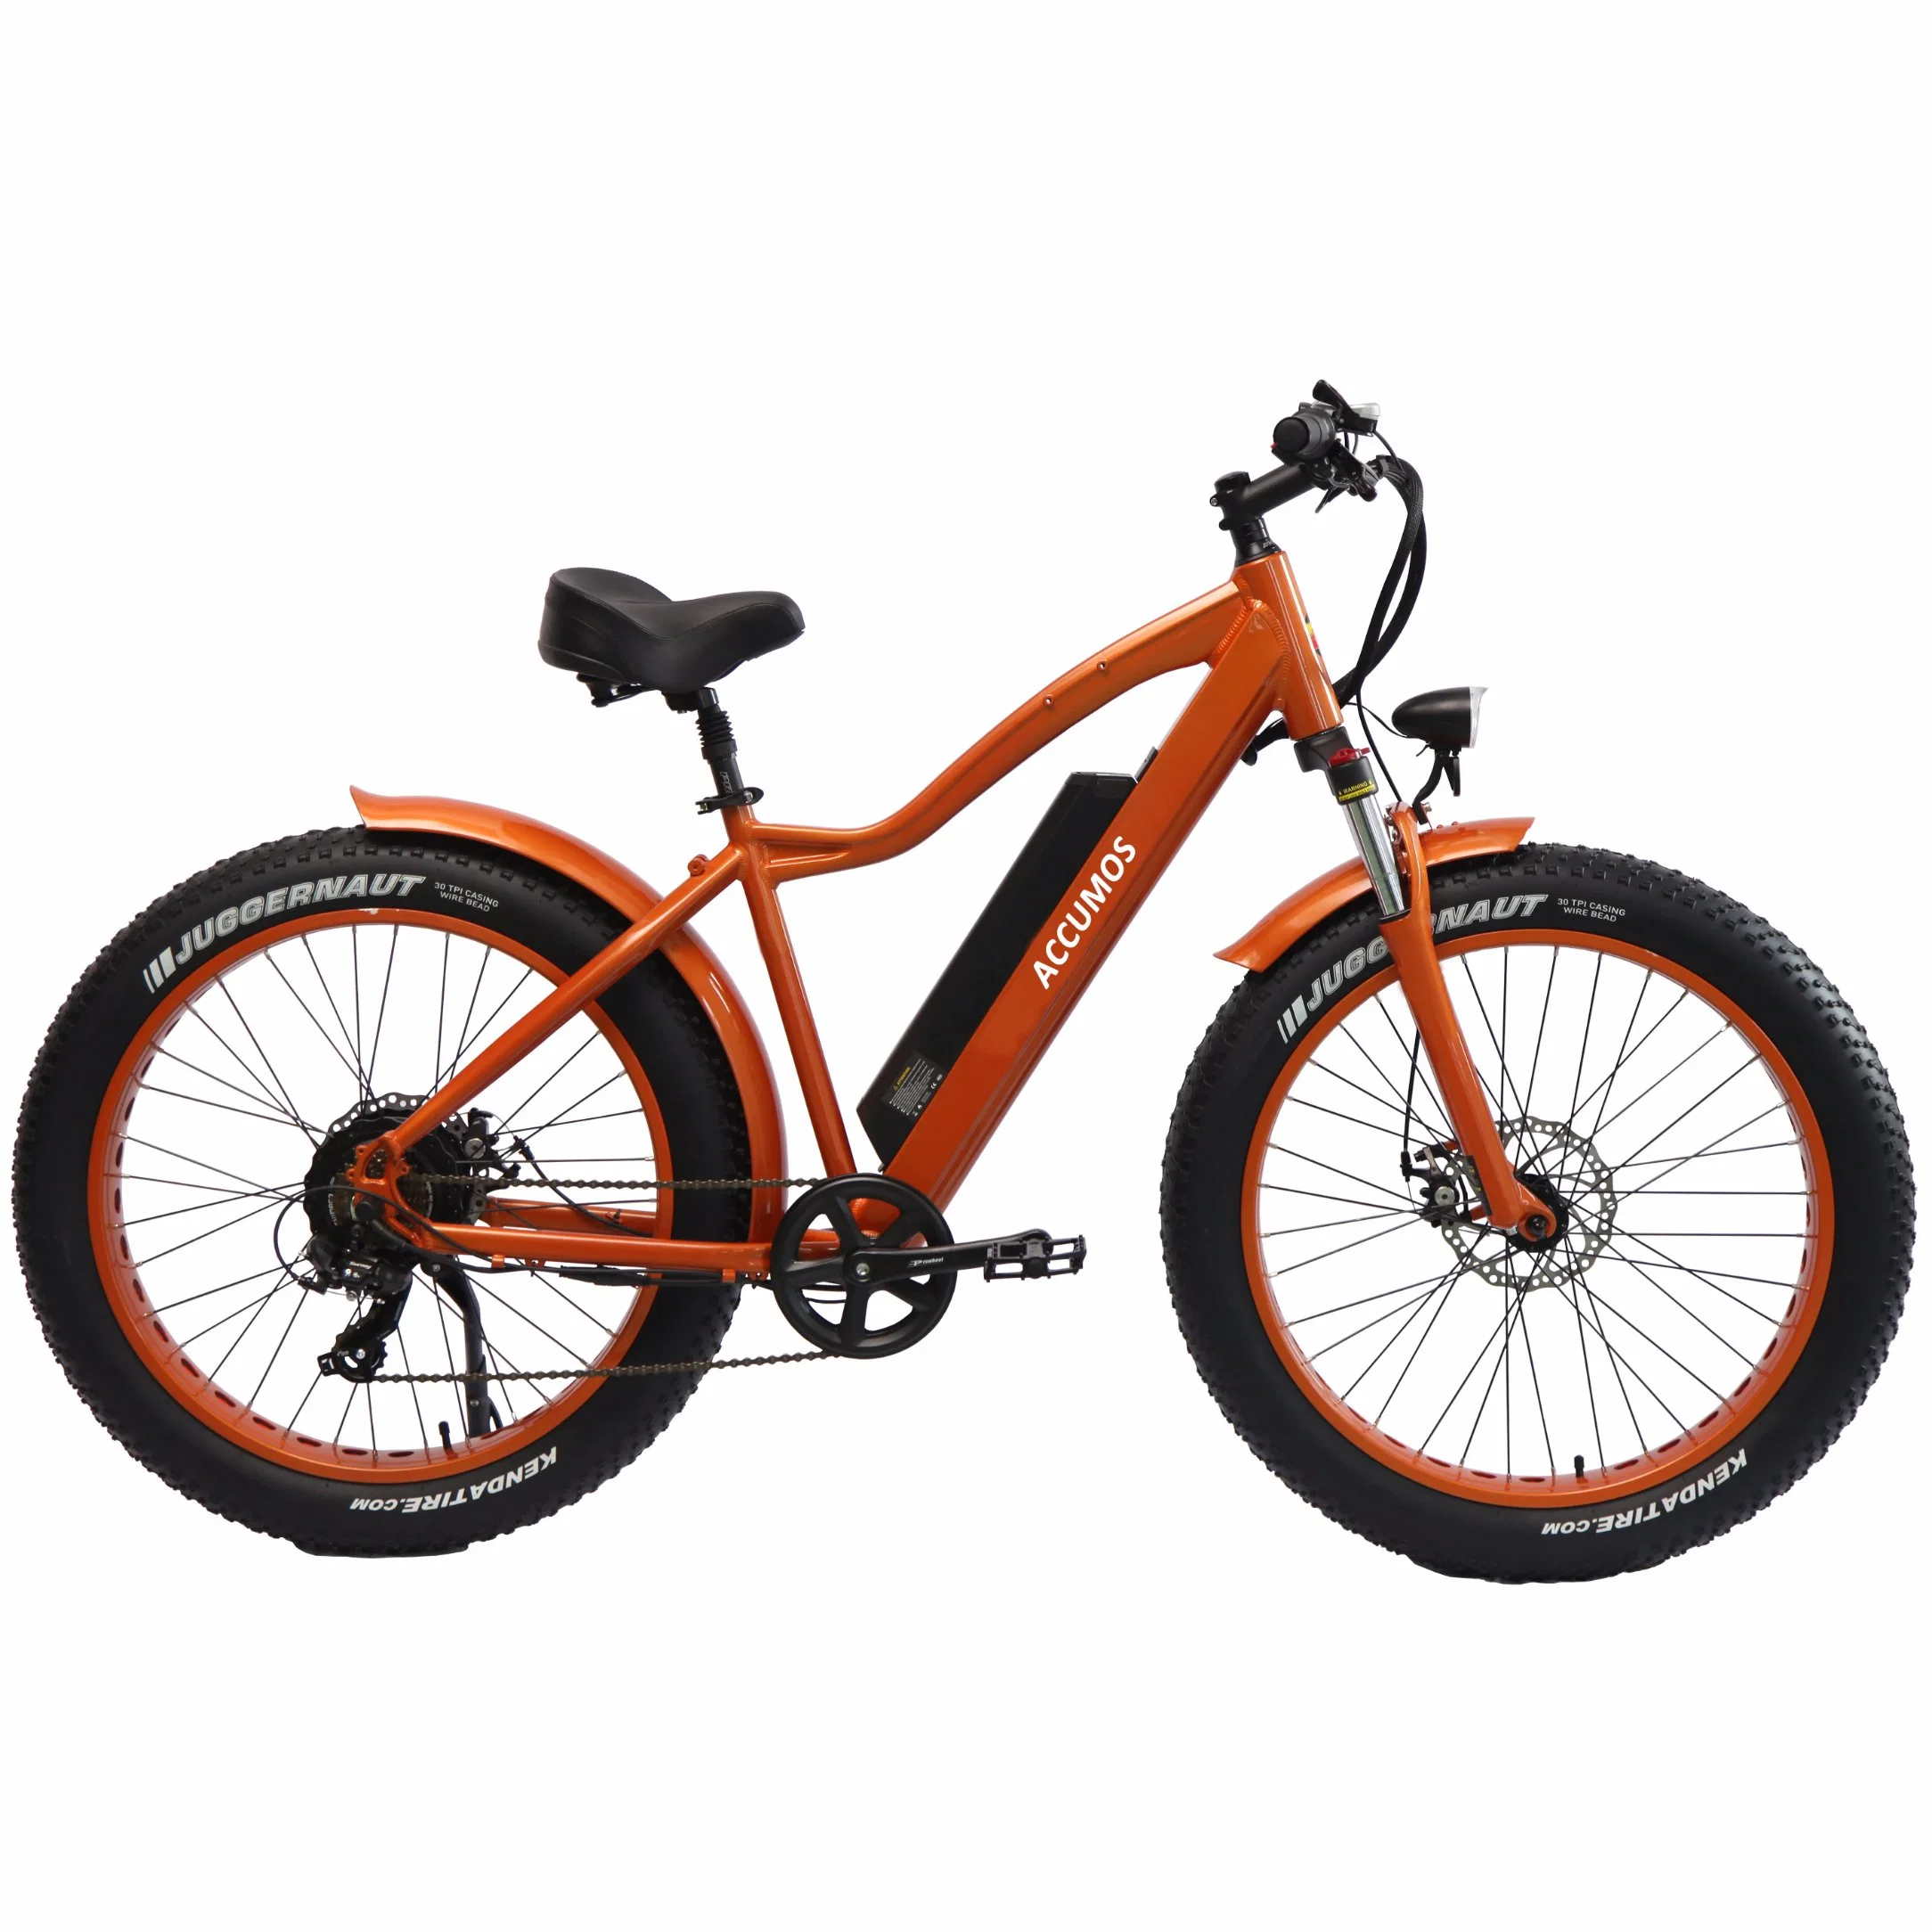 500W/1000 W de potência elevada e bicicletas de montanha de gordura Scooter Eléctrico bicicleta eléctrica/aluguer